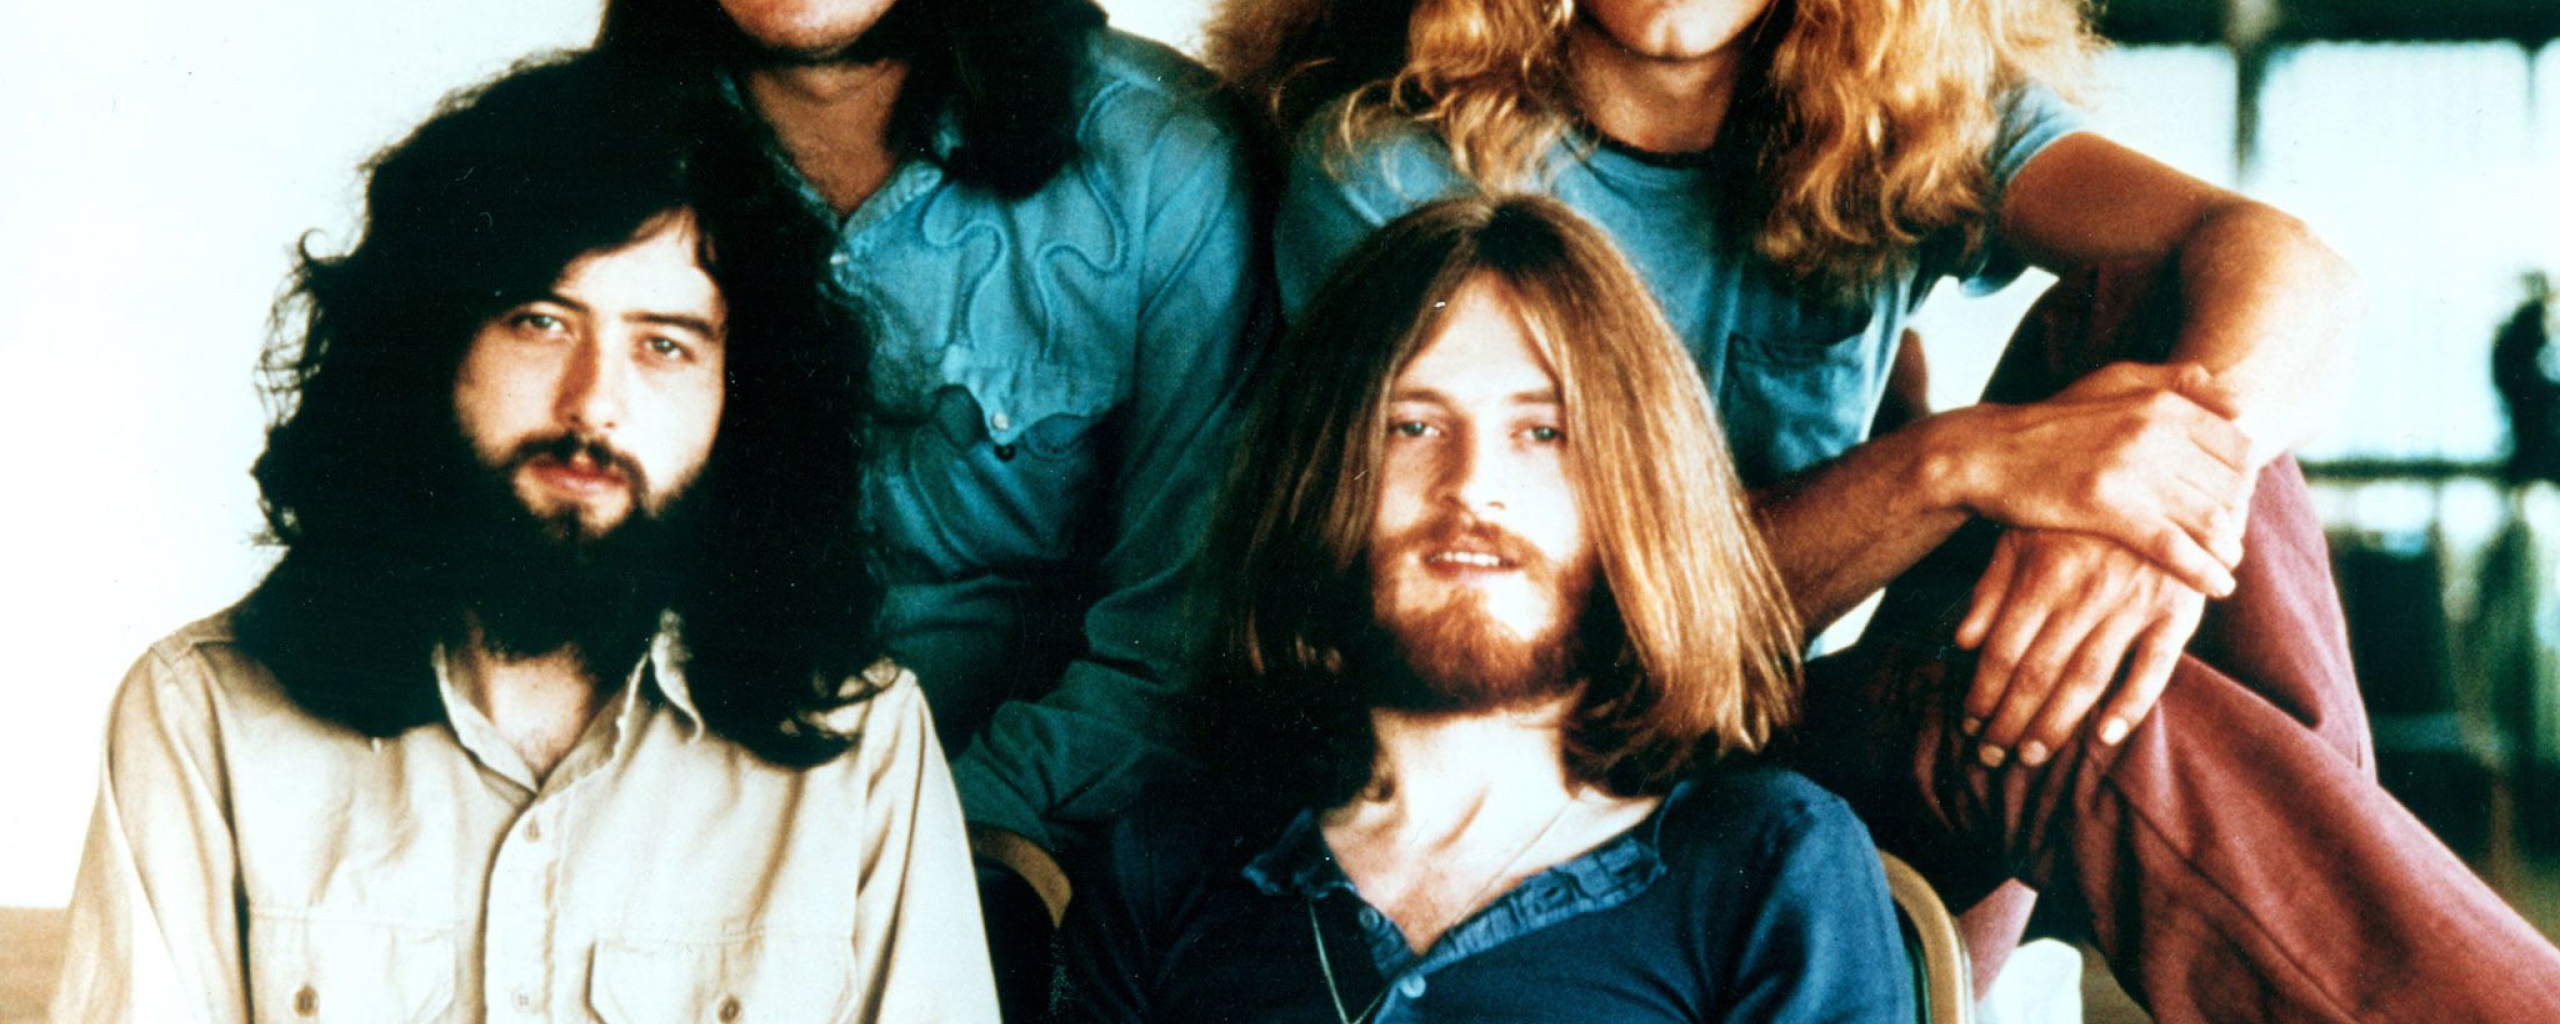 Led Zeppelin 1970s - HD Wallpaper 